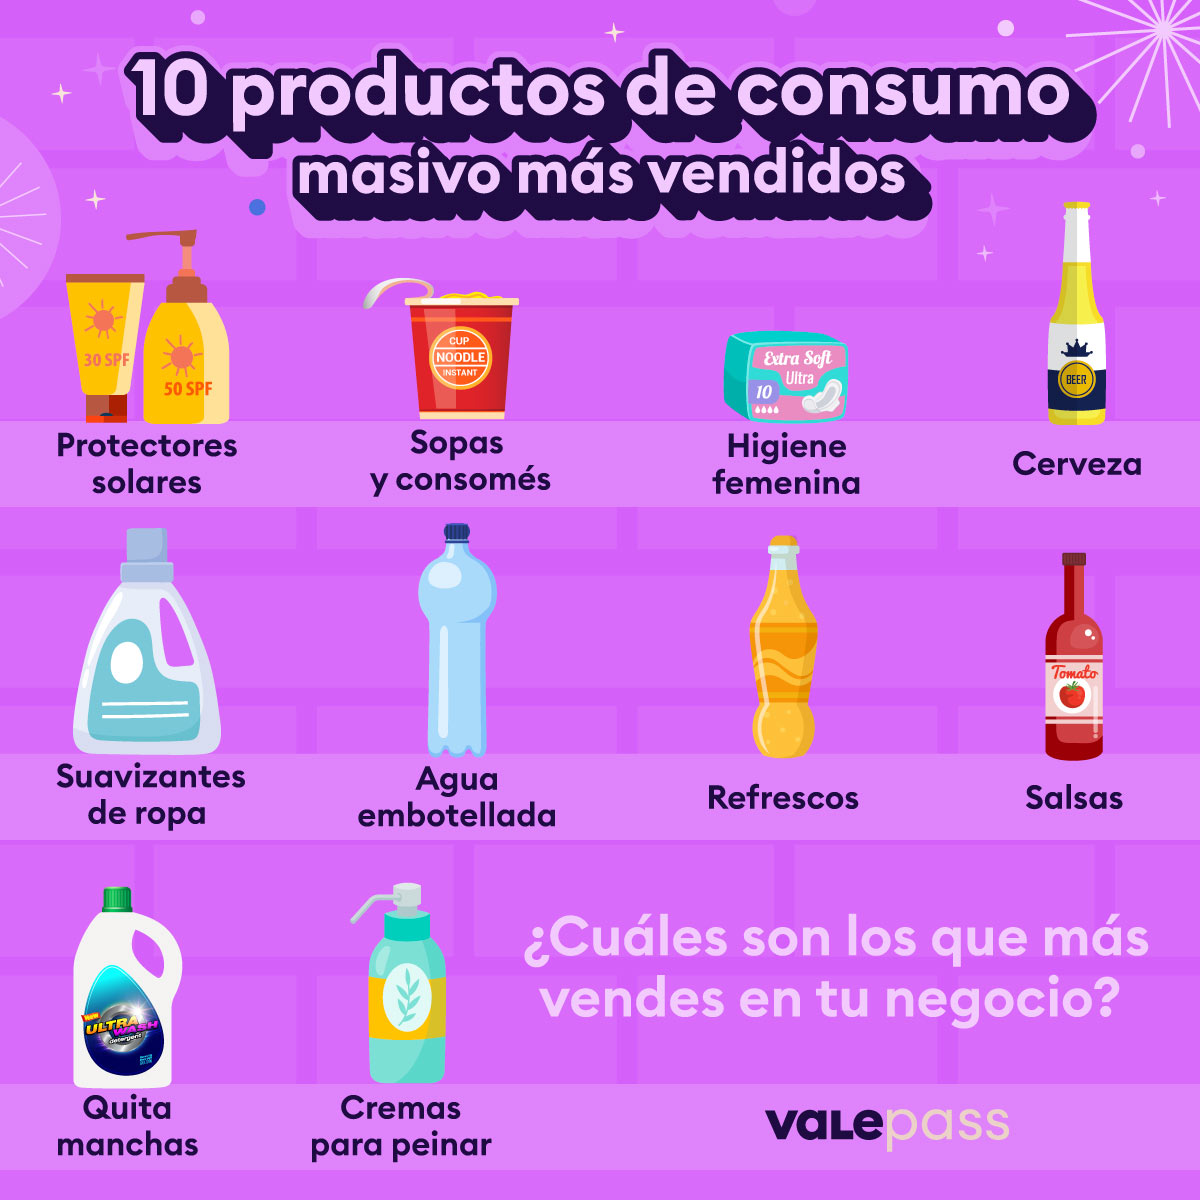 10 productos de consumo masivo con más ventas